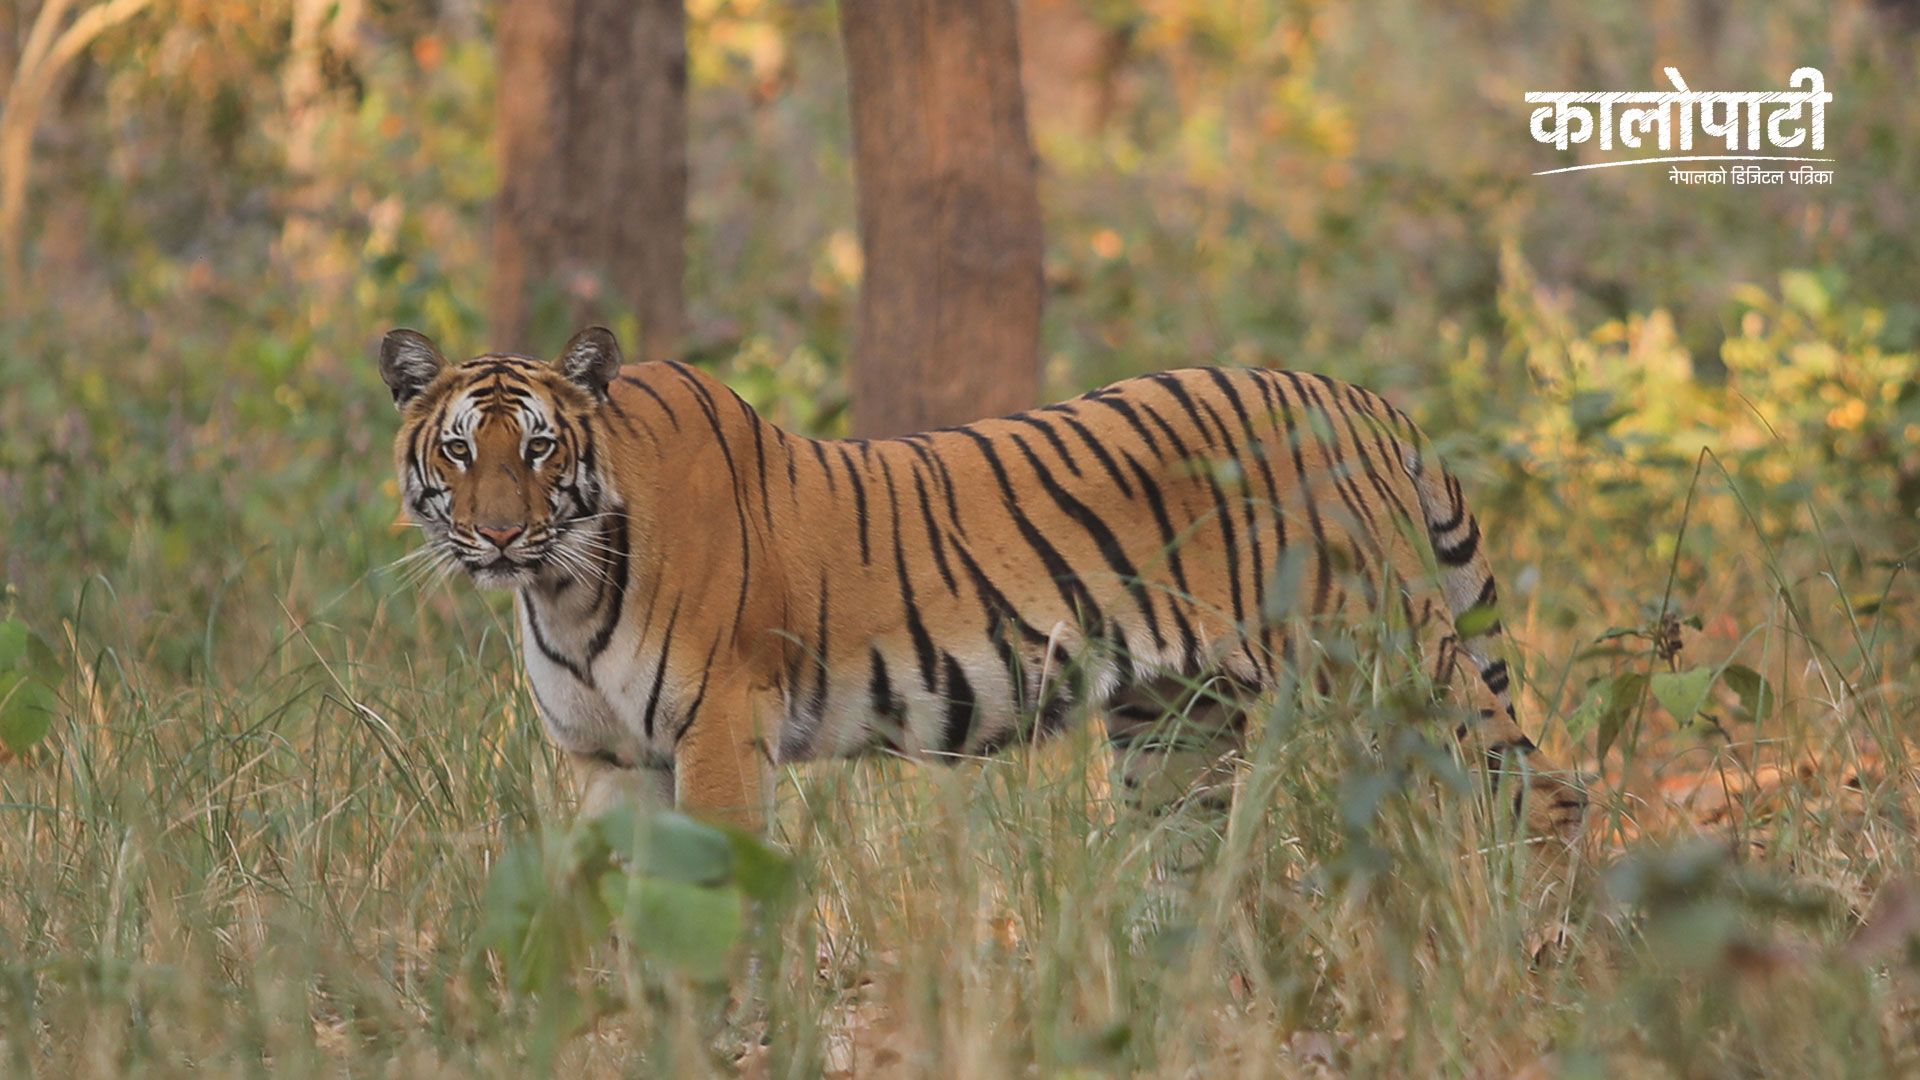 निकुञ्जमा बाघ देख्न पाउँदा पर्यटक खुसी